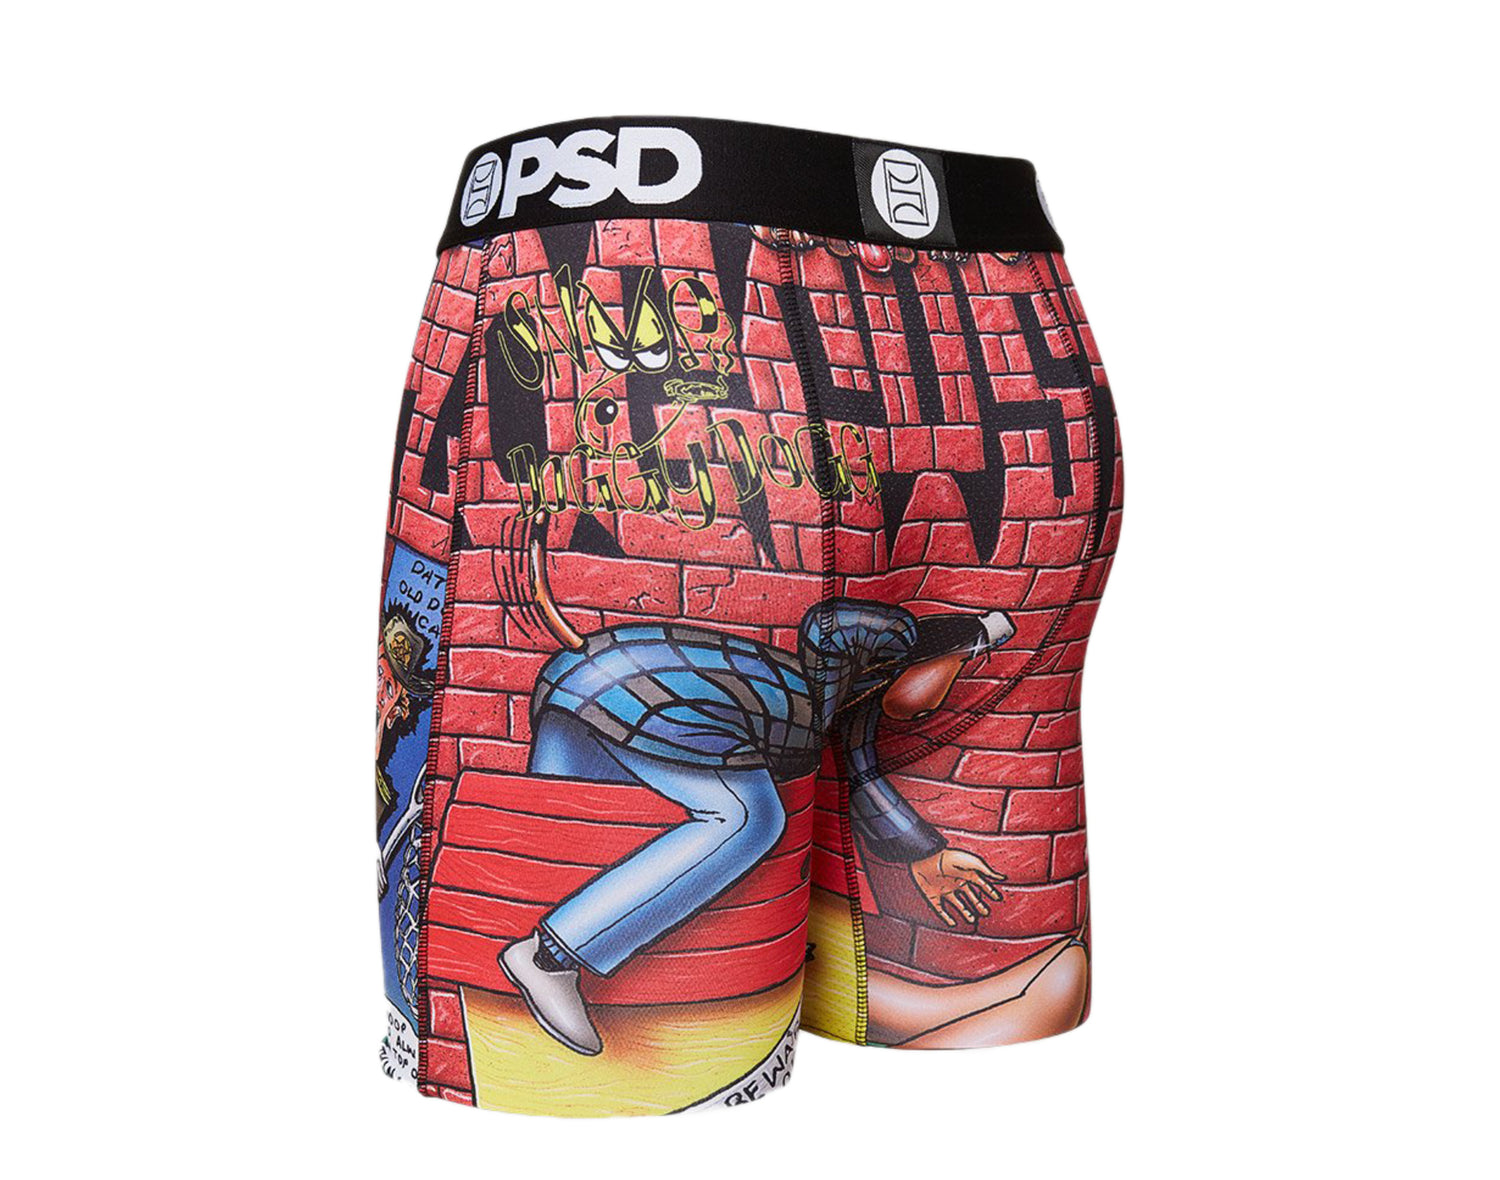 PSD Doggy Style Boxer Briefs Men's Underwear